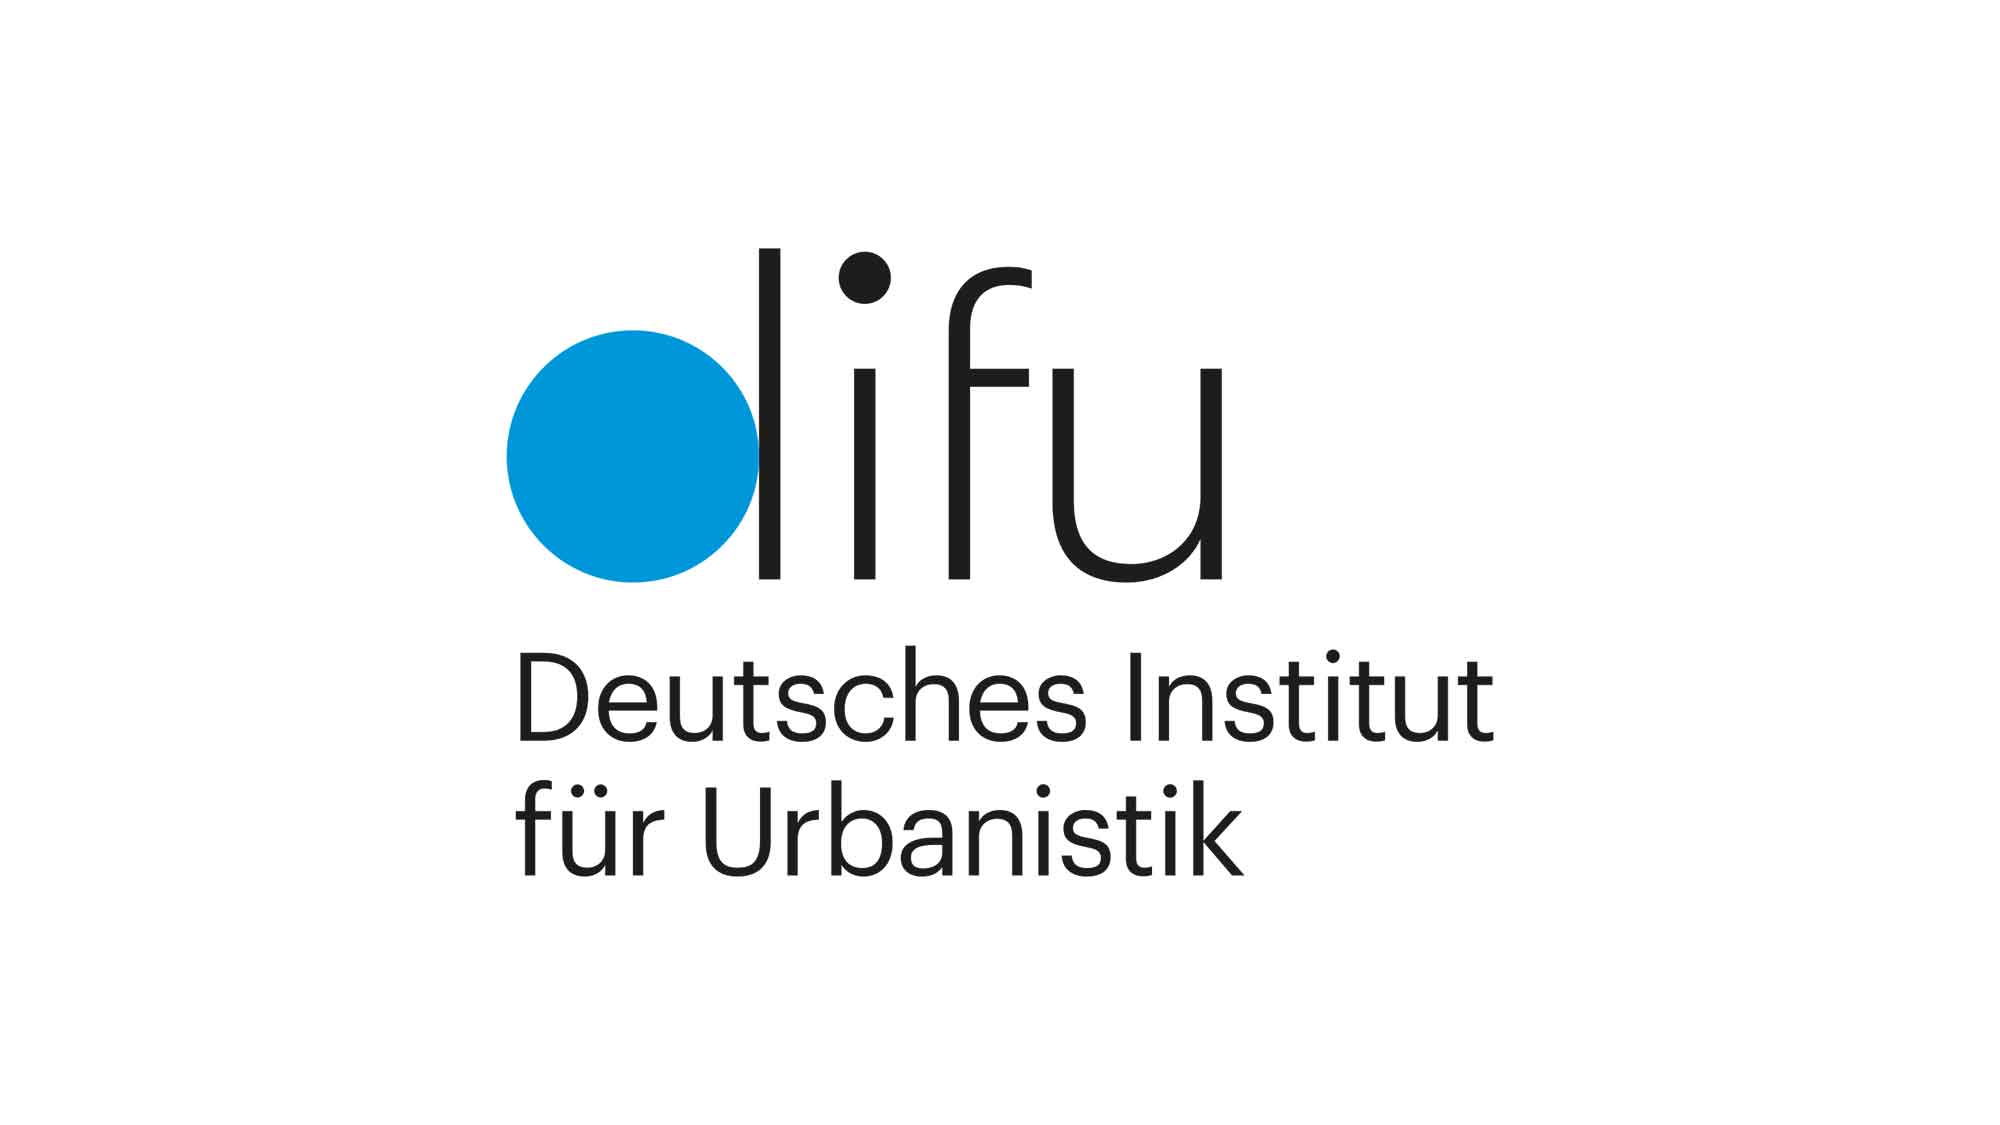 Deutsches Institut für Urbanistik (DIFU): Sustainable Finance – Zukunftsthema mit Gestaltungspotenzial auch für Kommunen